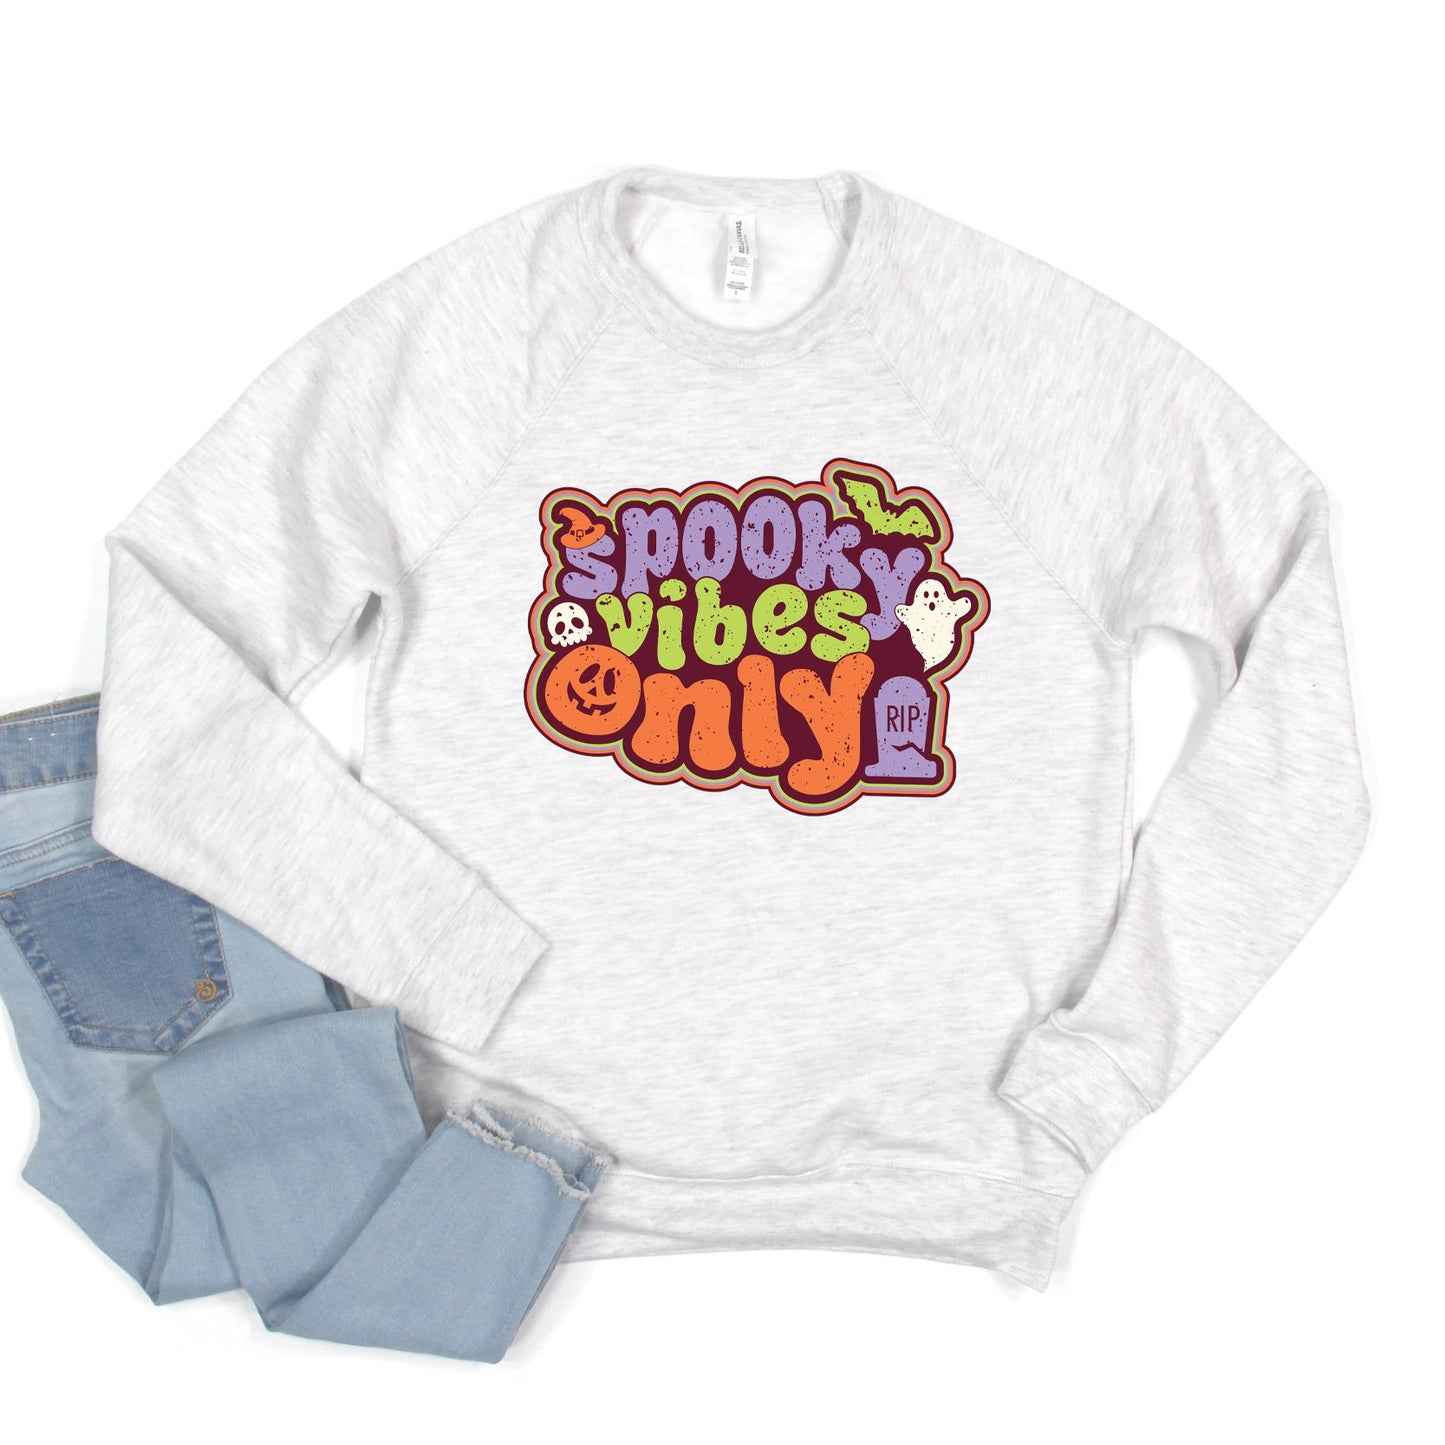 Spooky Vibes Only Retro | Bella Canvas Sweatshirt